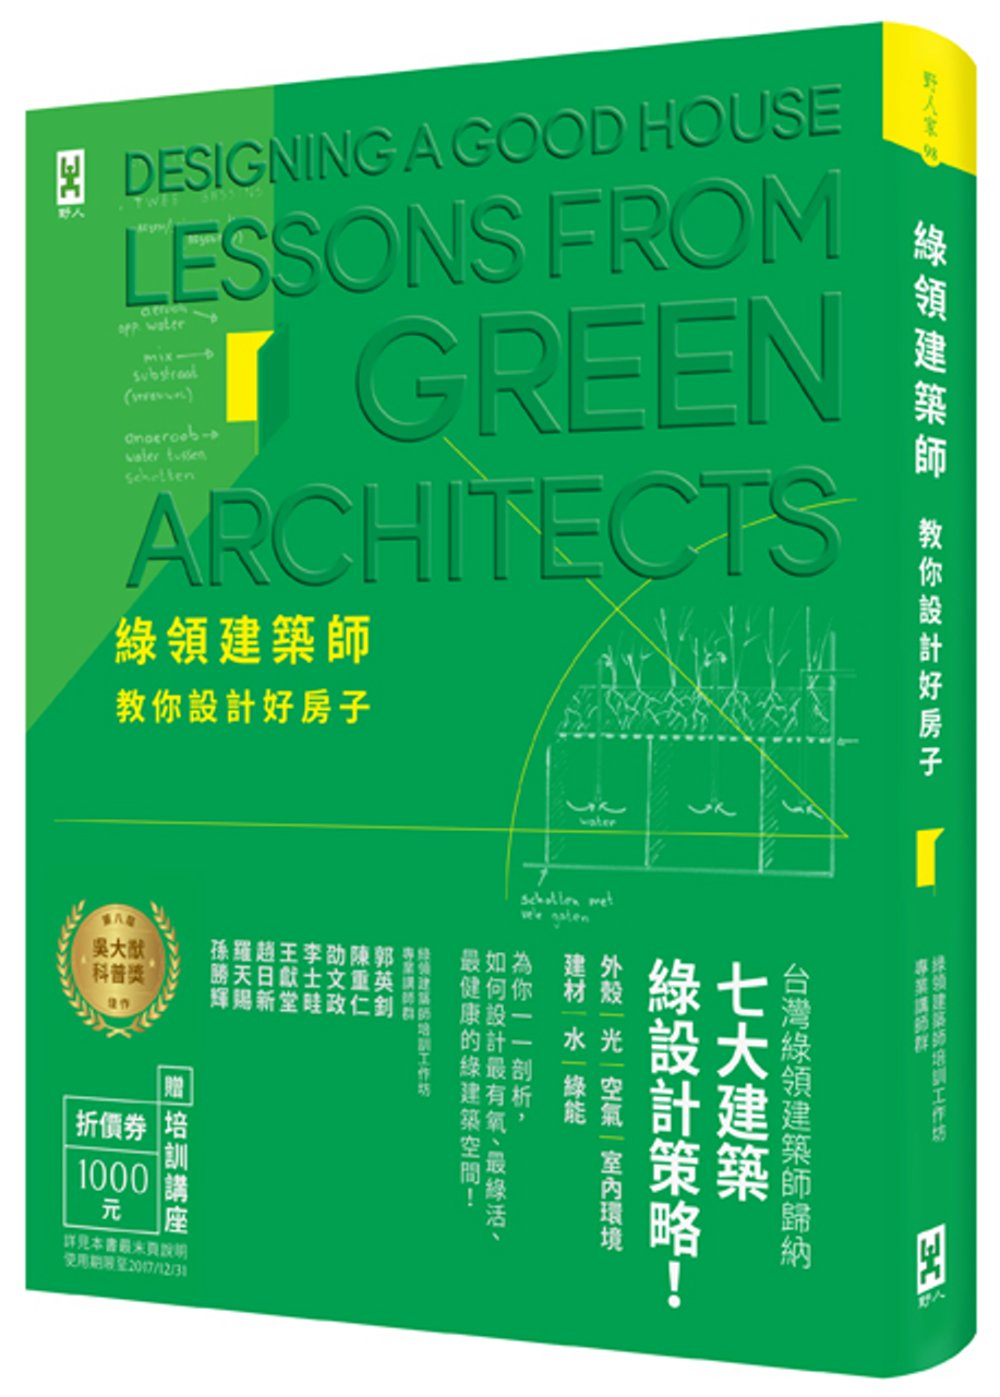 綠領建築師教你設計好房子【修訂版】：綠建築七大指標＆設計策略...